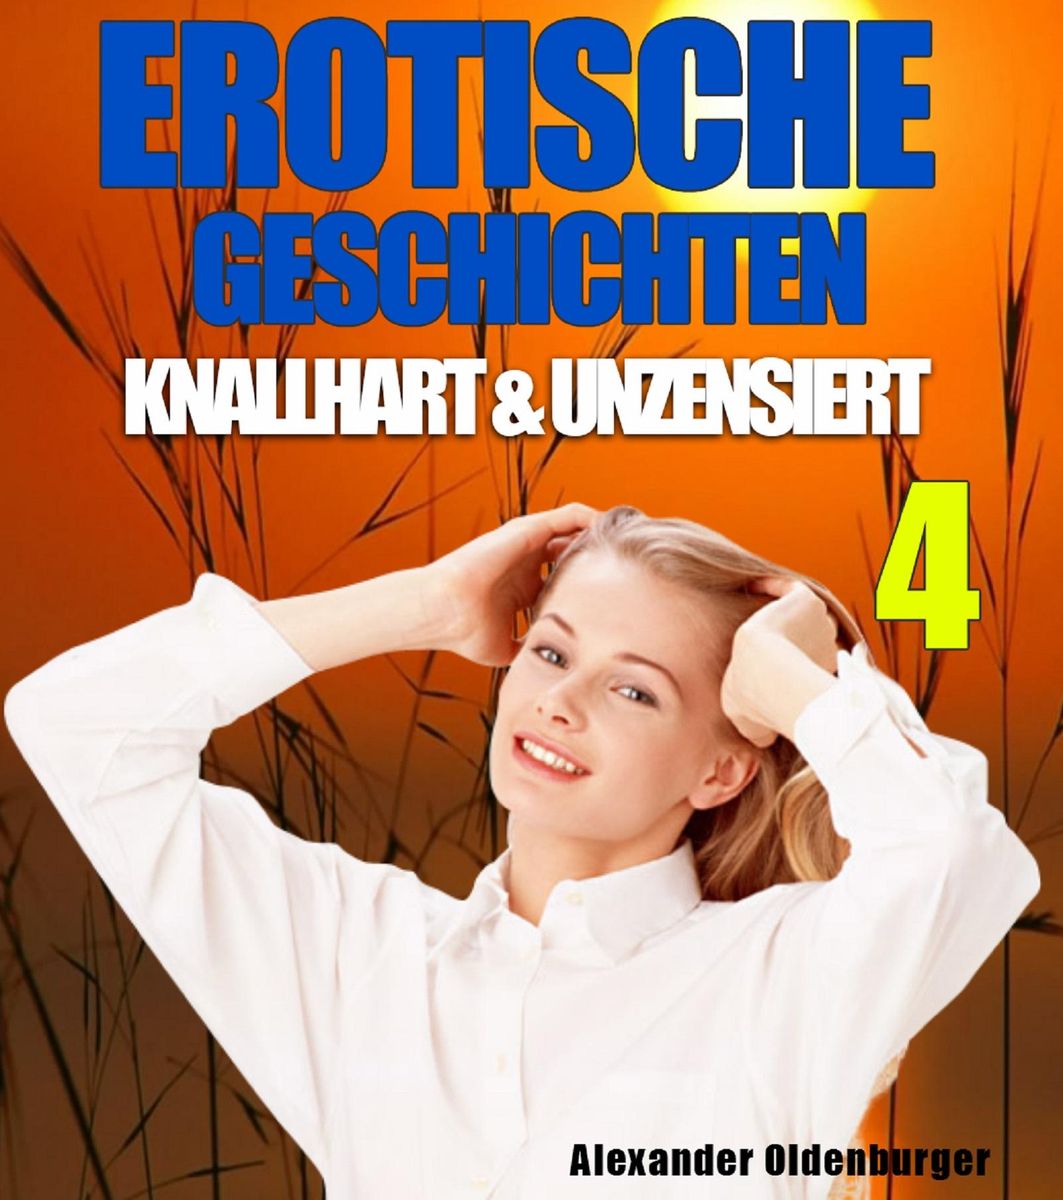 Erotische Geschichten Knallhart Und Unzensiert 4 Von Alexander Oldenburger Ebooks Orell Füssli 7172